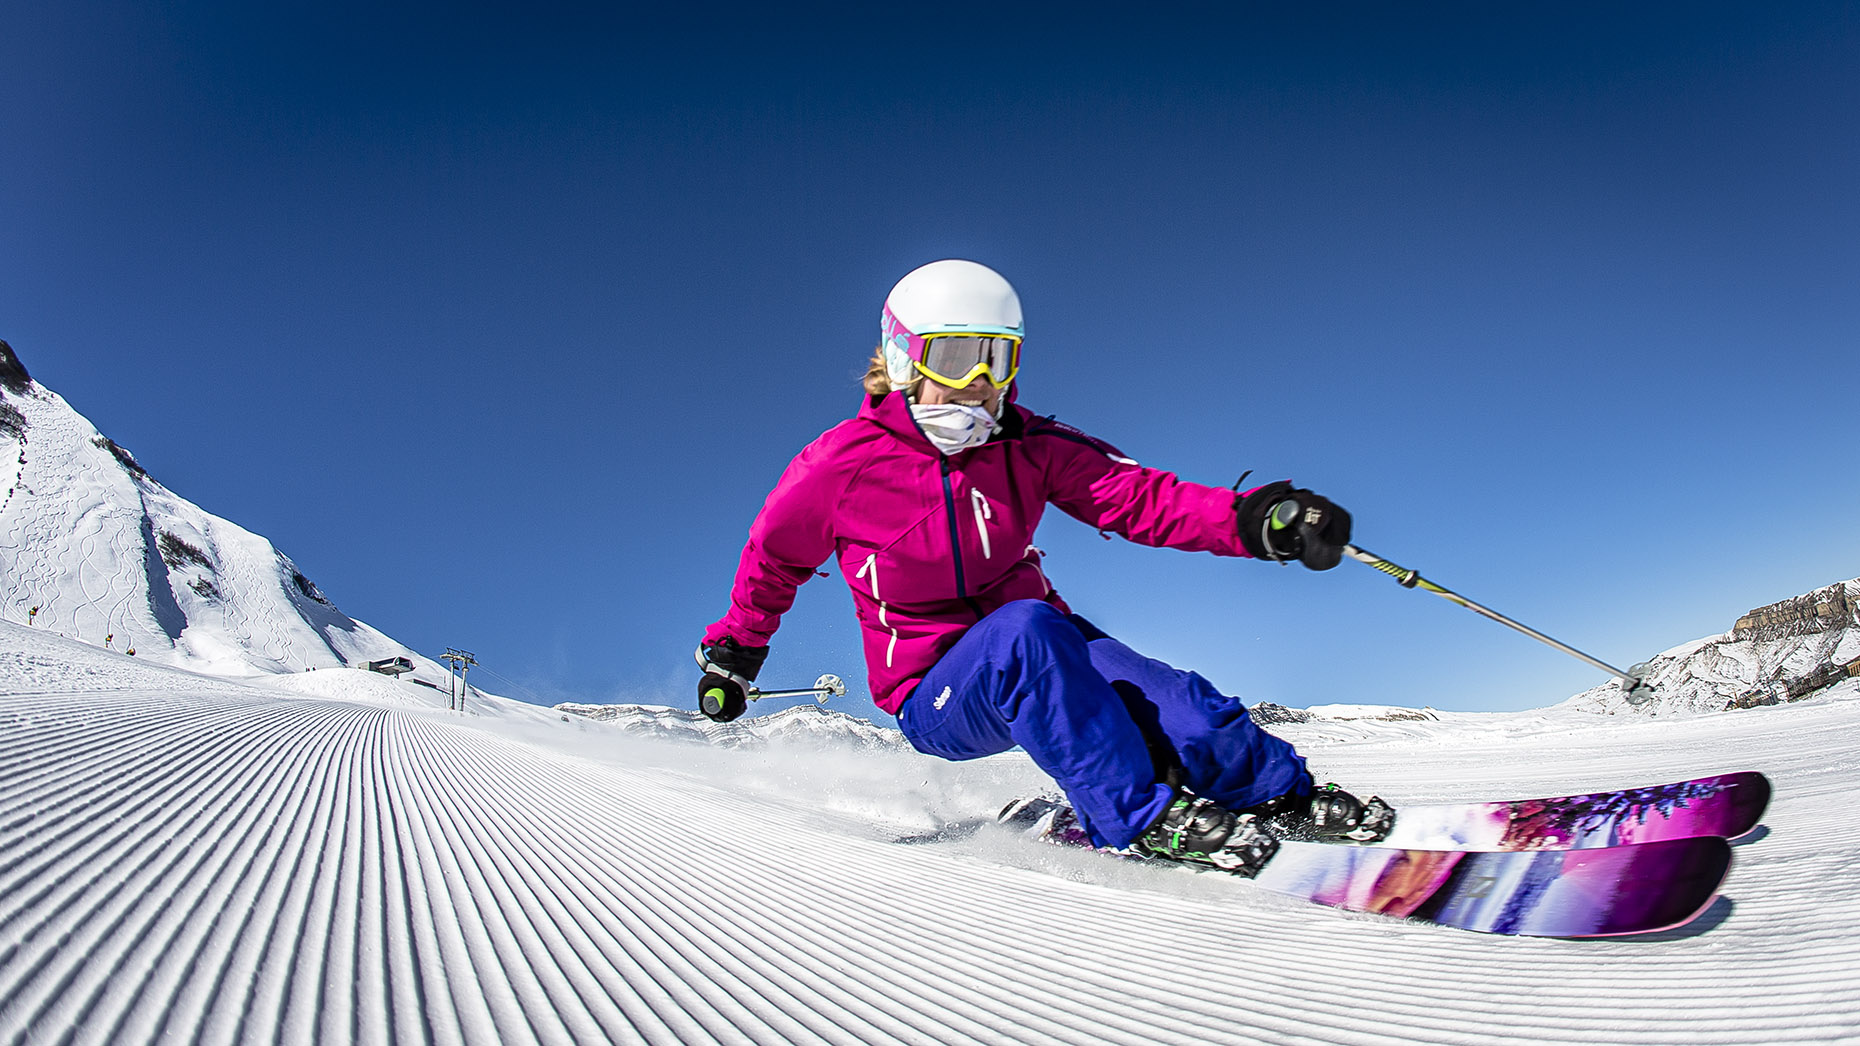 DAP sport skiing Azerbaijan Shahdag Hannah Hardaway